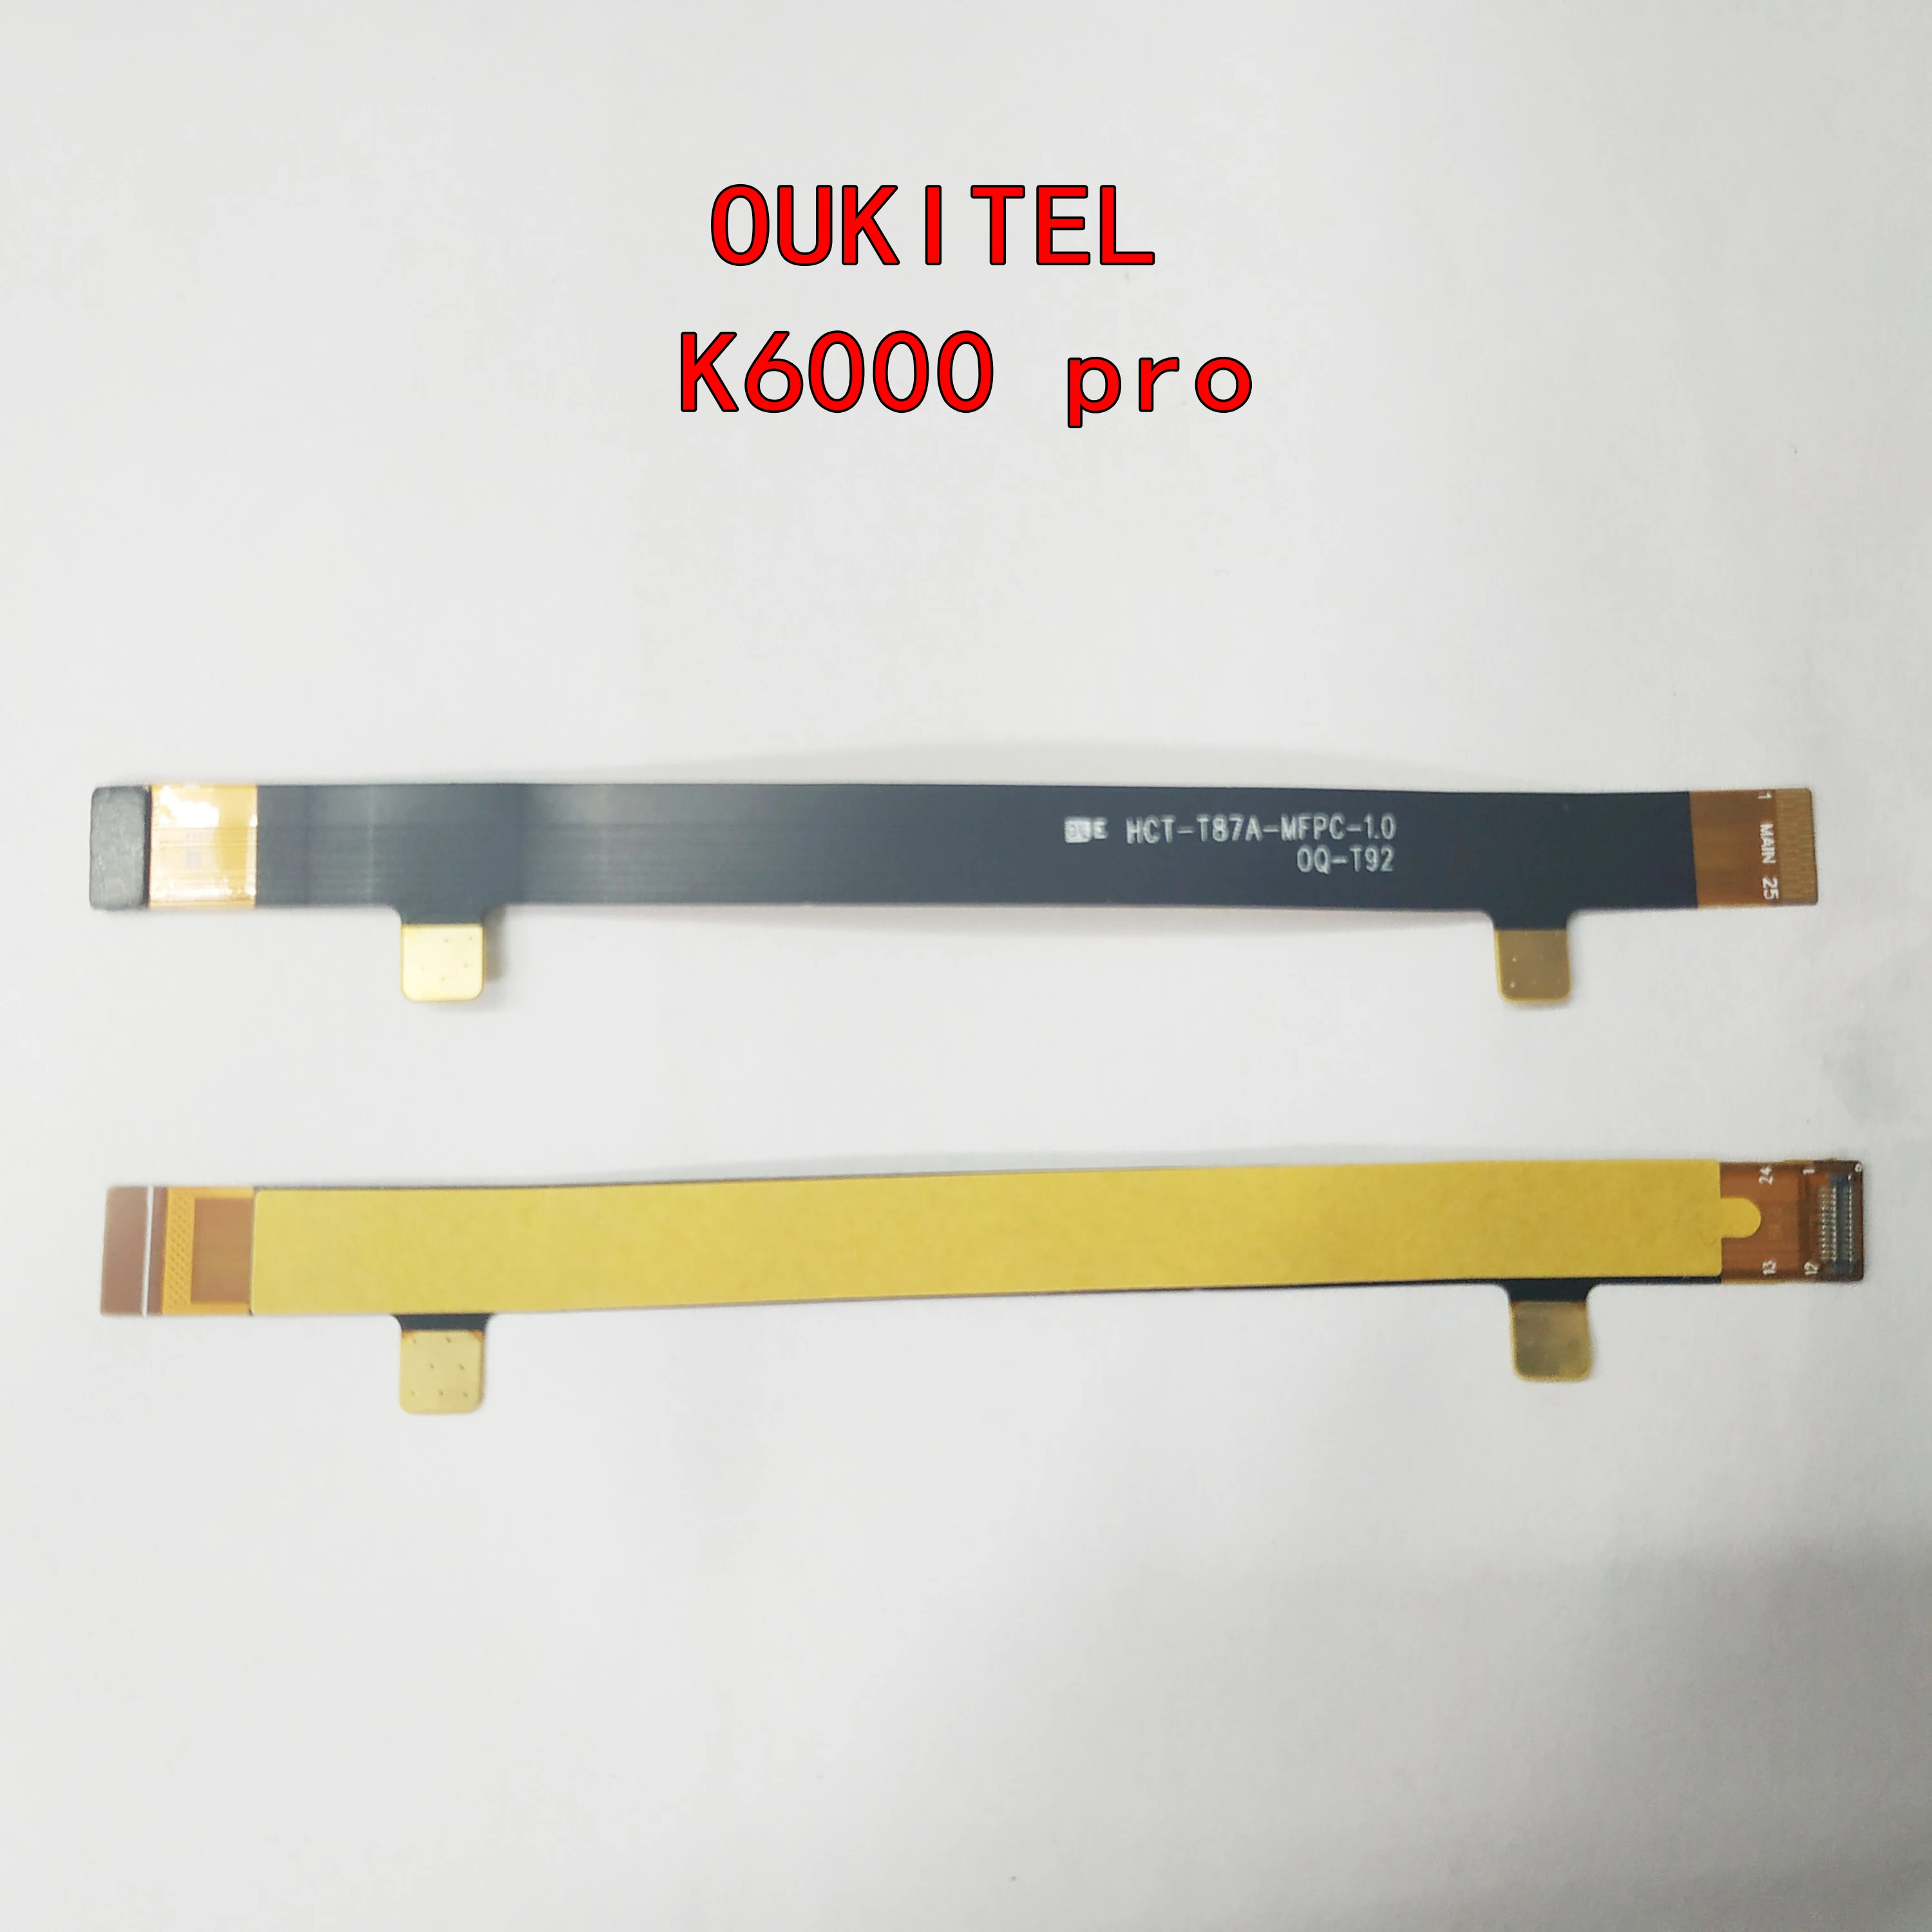 

Материнская плата ЖК гибкий кабель для Oukitel K6000 Pro K6000 FPC материнская плата гибкий резиновый кабель запасные части для ремонта